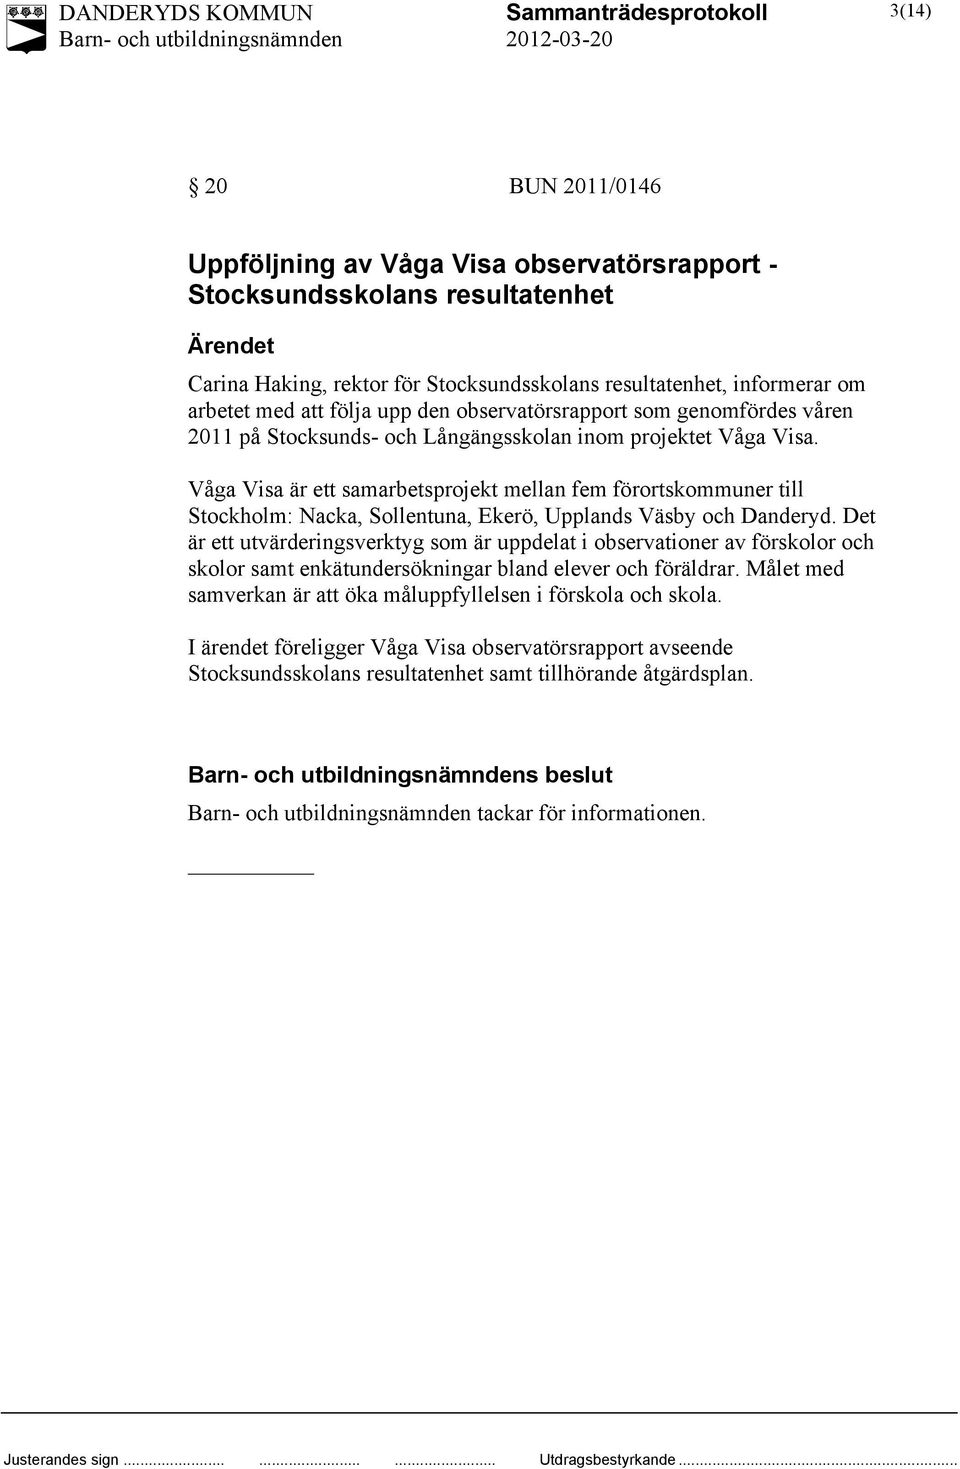 Våga Visa är ett samarbetsprojekt mellan fem förortskommuner till Stockholm: Nacka, Sollentuna, Ekerö, Upplands Väsby och Danderyd.